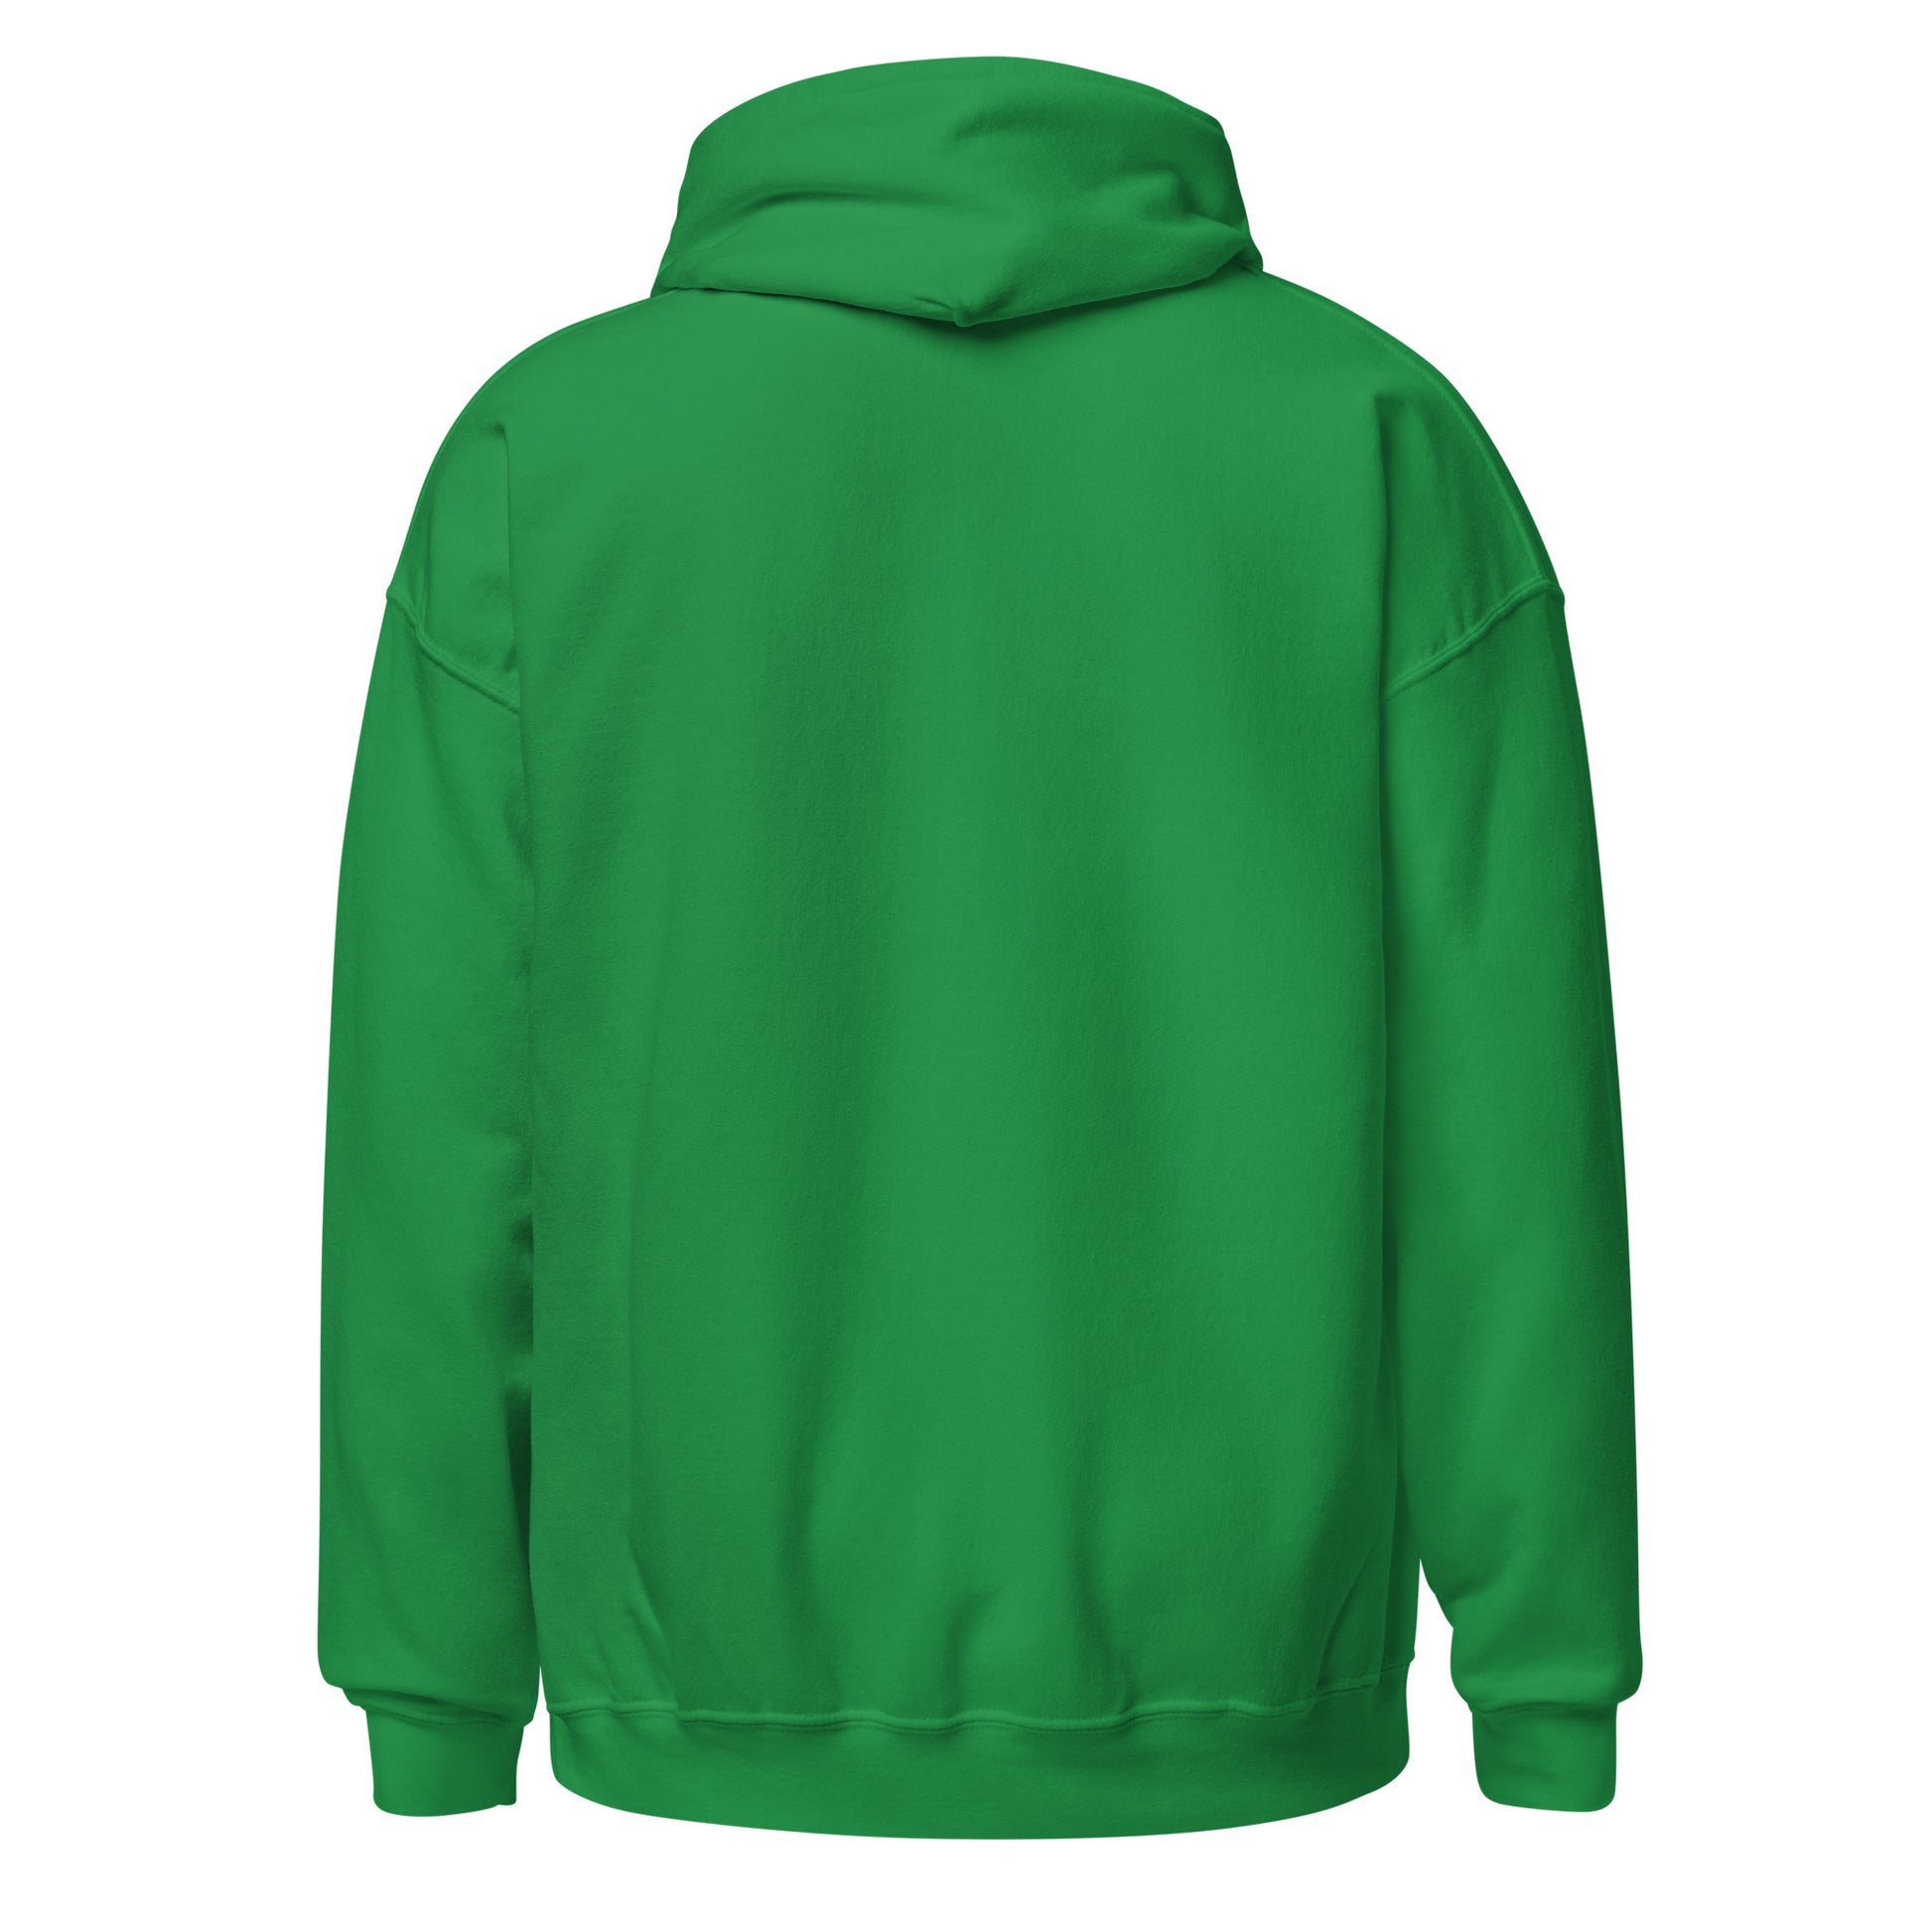 Child of God Hoodie - Irish Green / S - Shirts & Tops